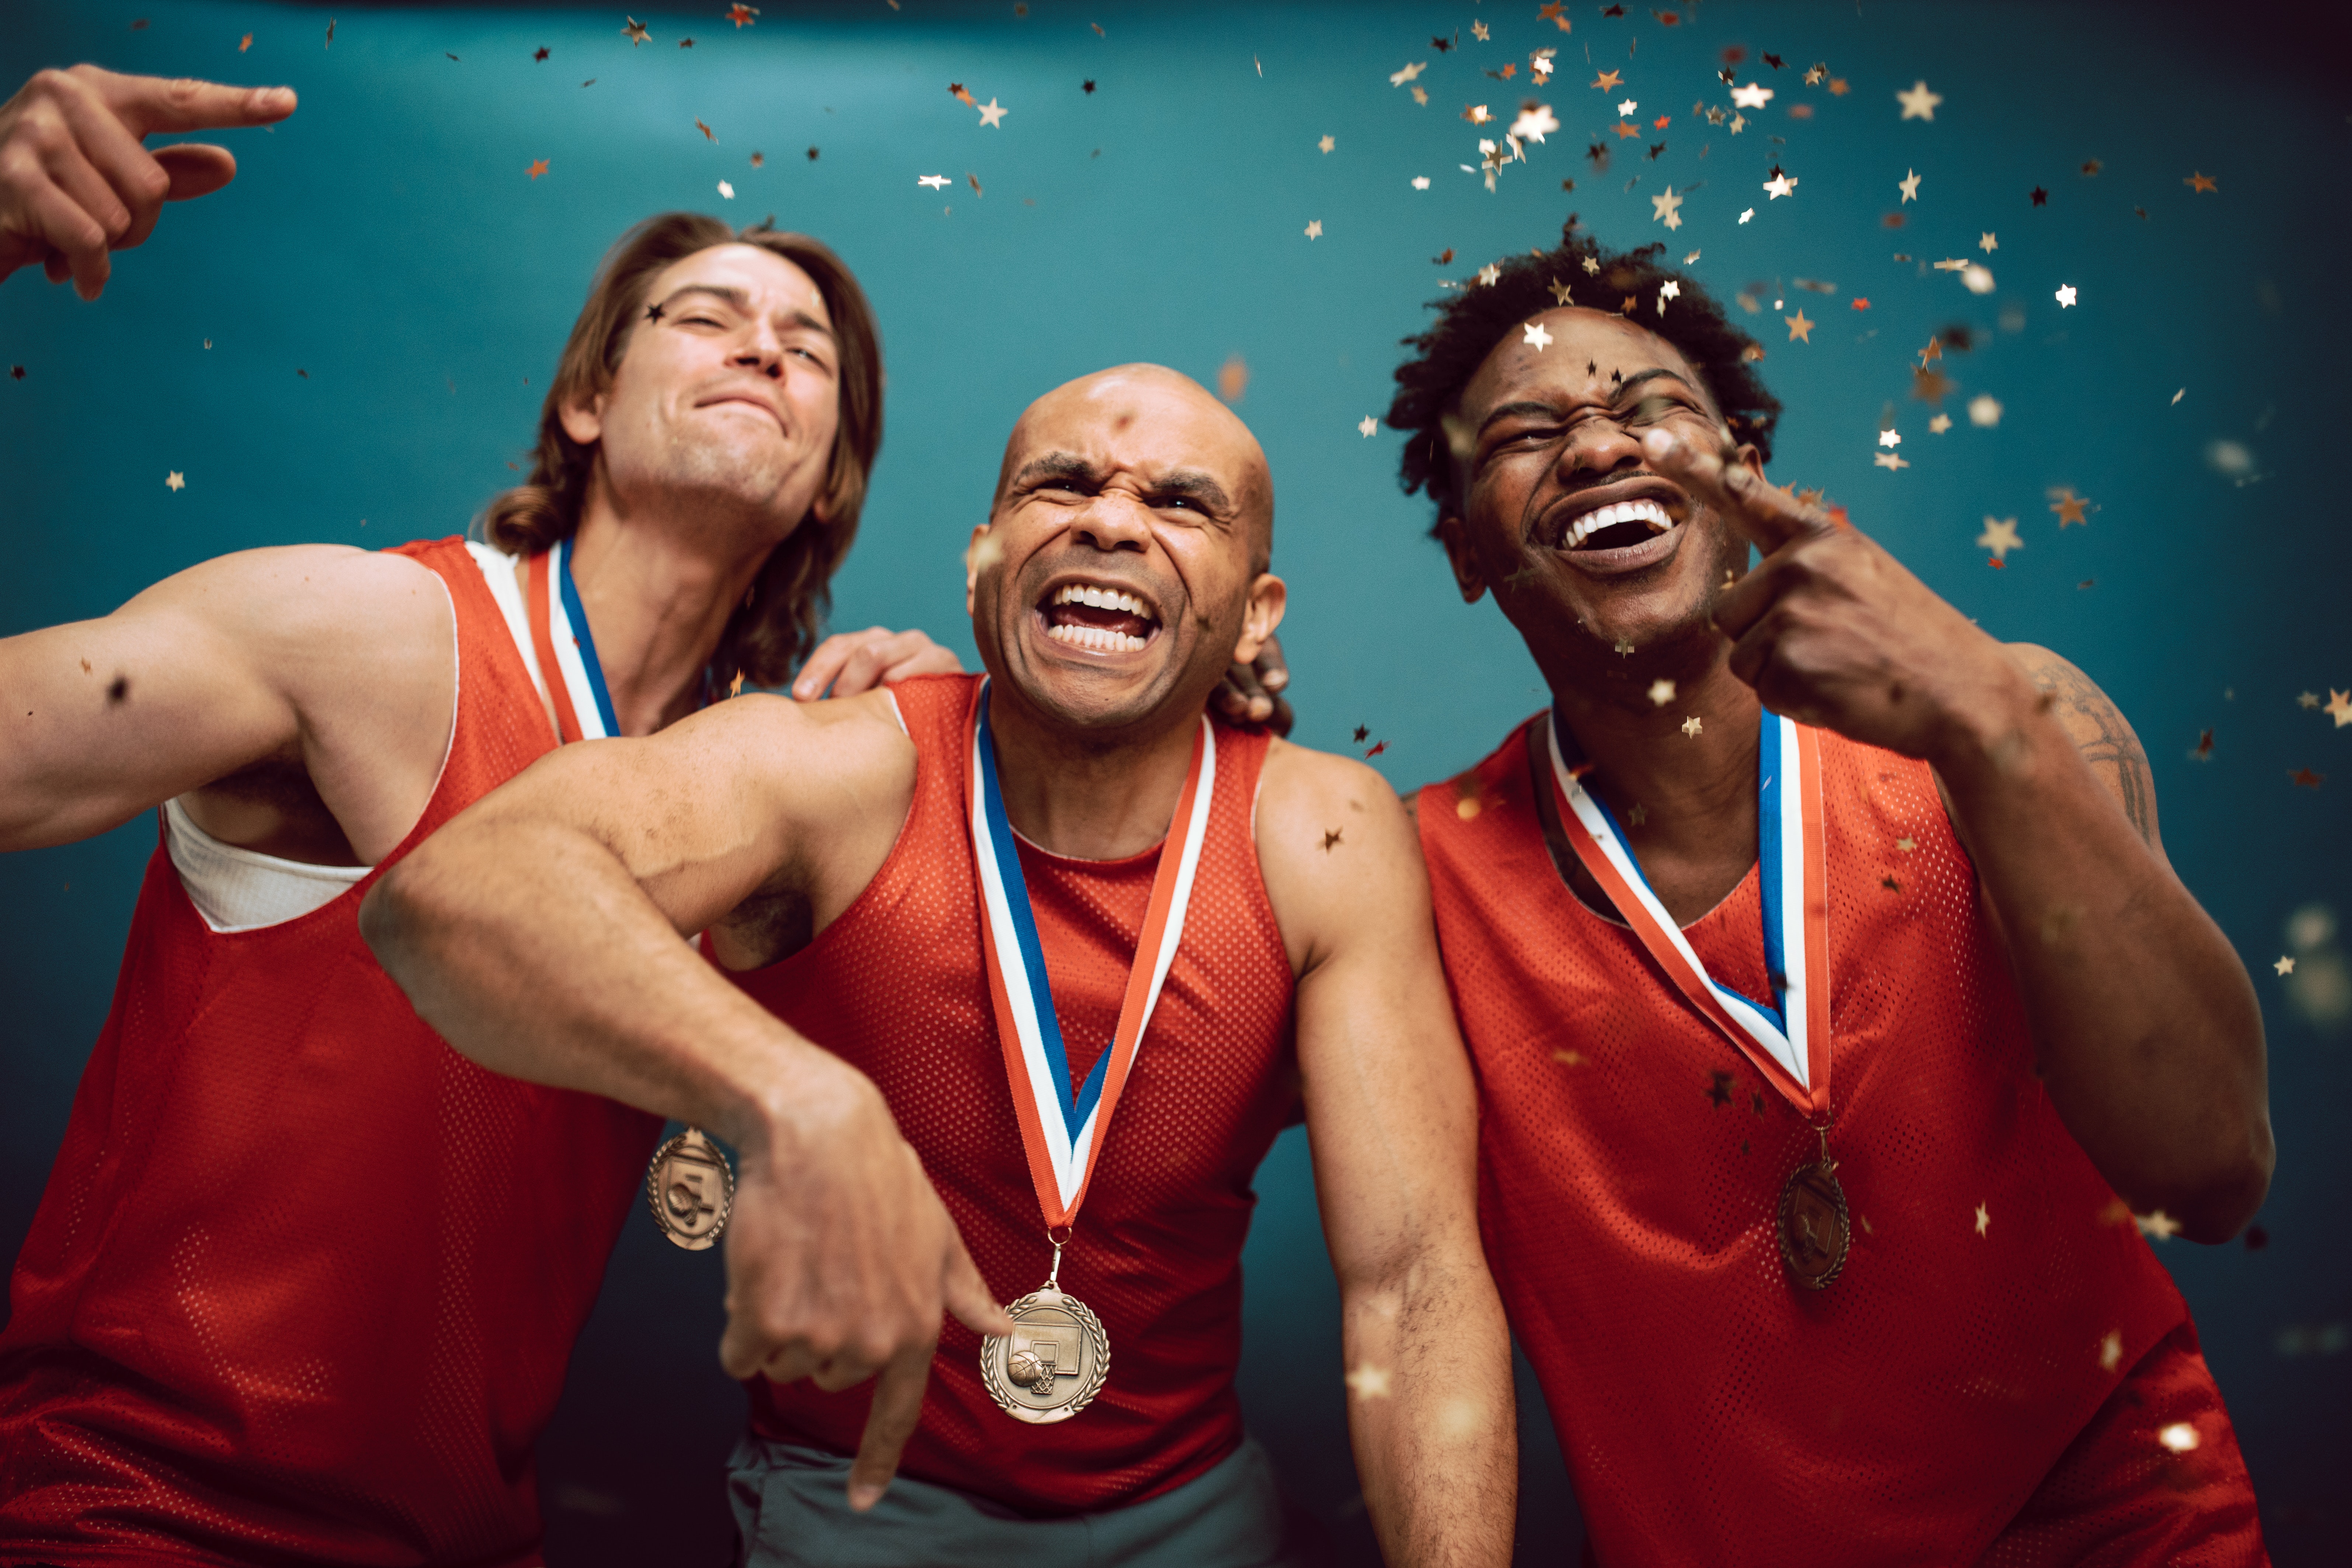 La imagen muestra tres personas alegres con ropa deportiva y medallas con gesto de celebración.